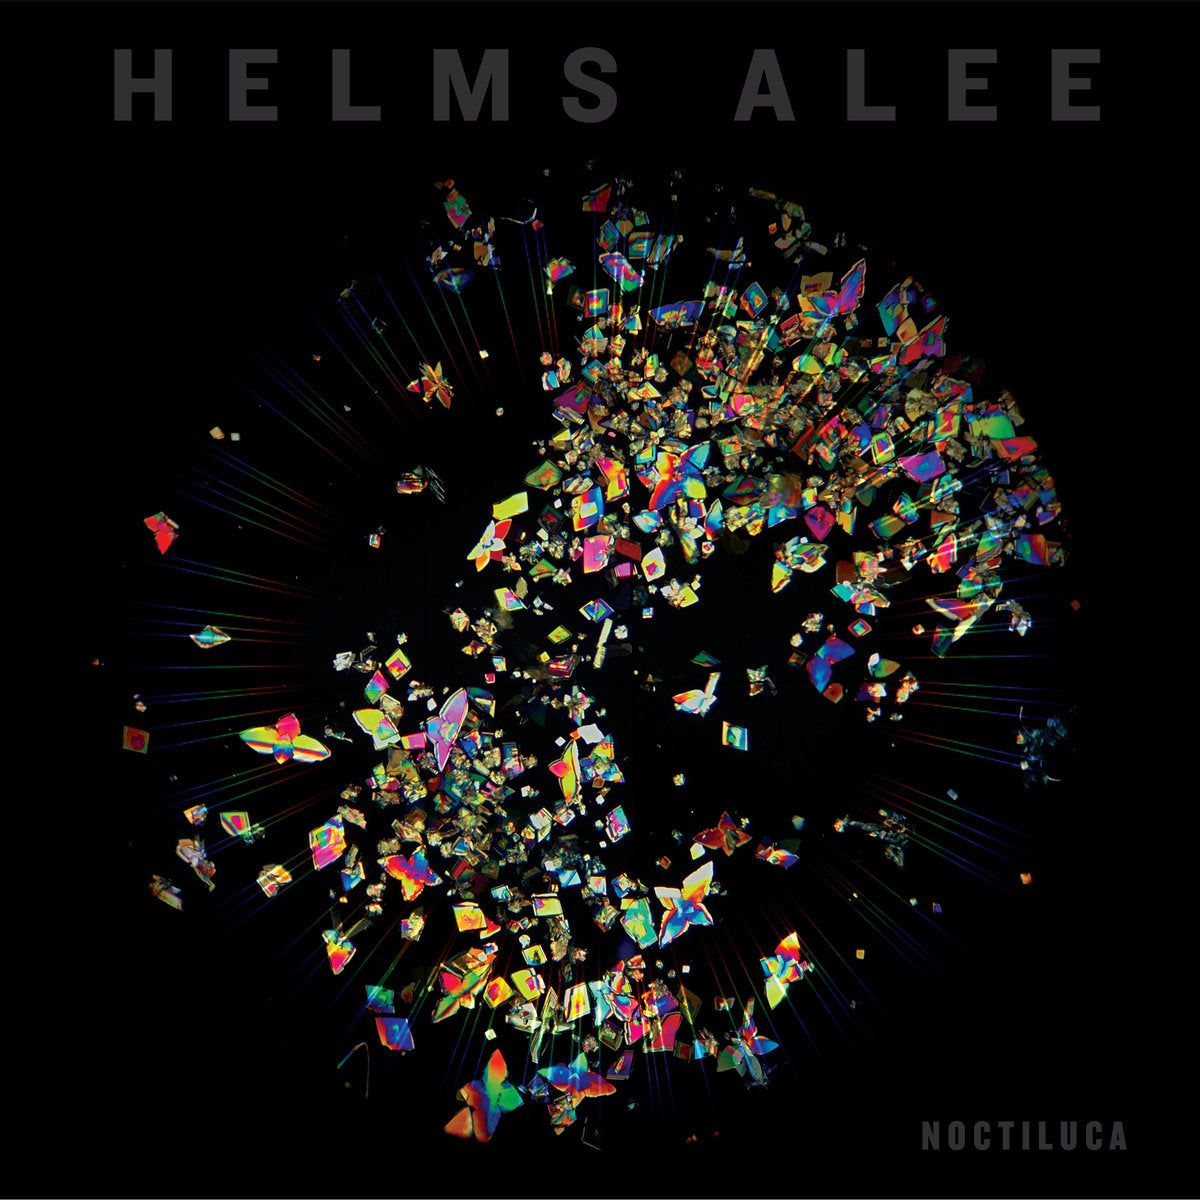 HELMS ALEE "Noctiluca" CD